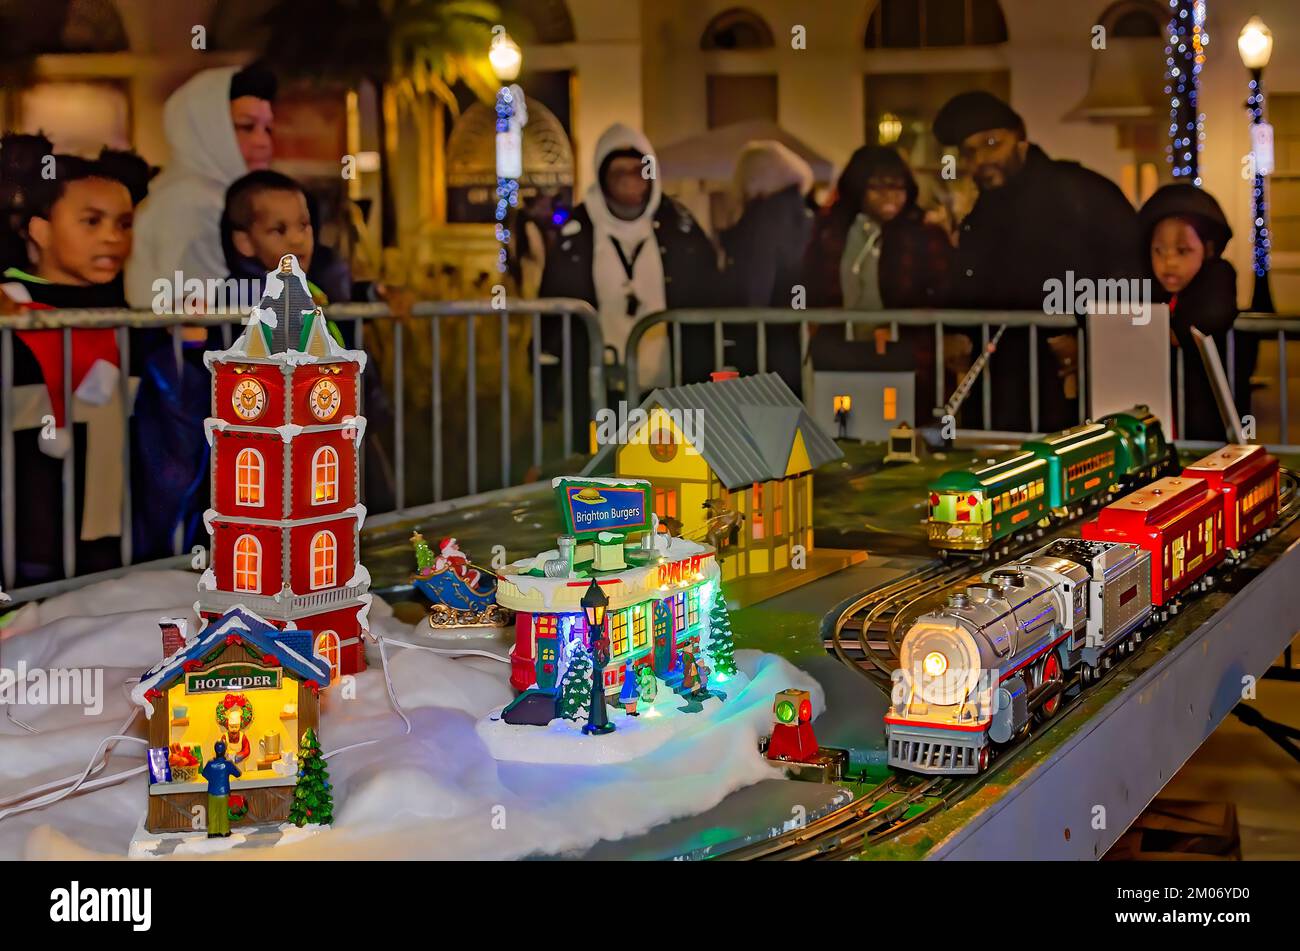 Die Leute schauen sich eine Modelleisenbahn an, 18. November 2022, in Mobile, Alabama. Das Dorf war Teil einer Weihnachtsausstellung. Stockfoto